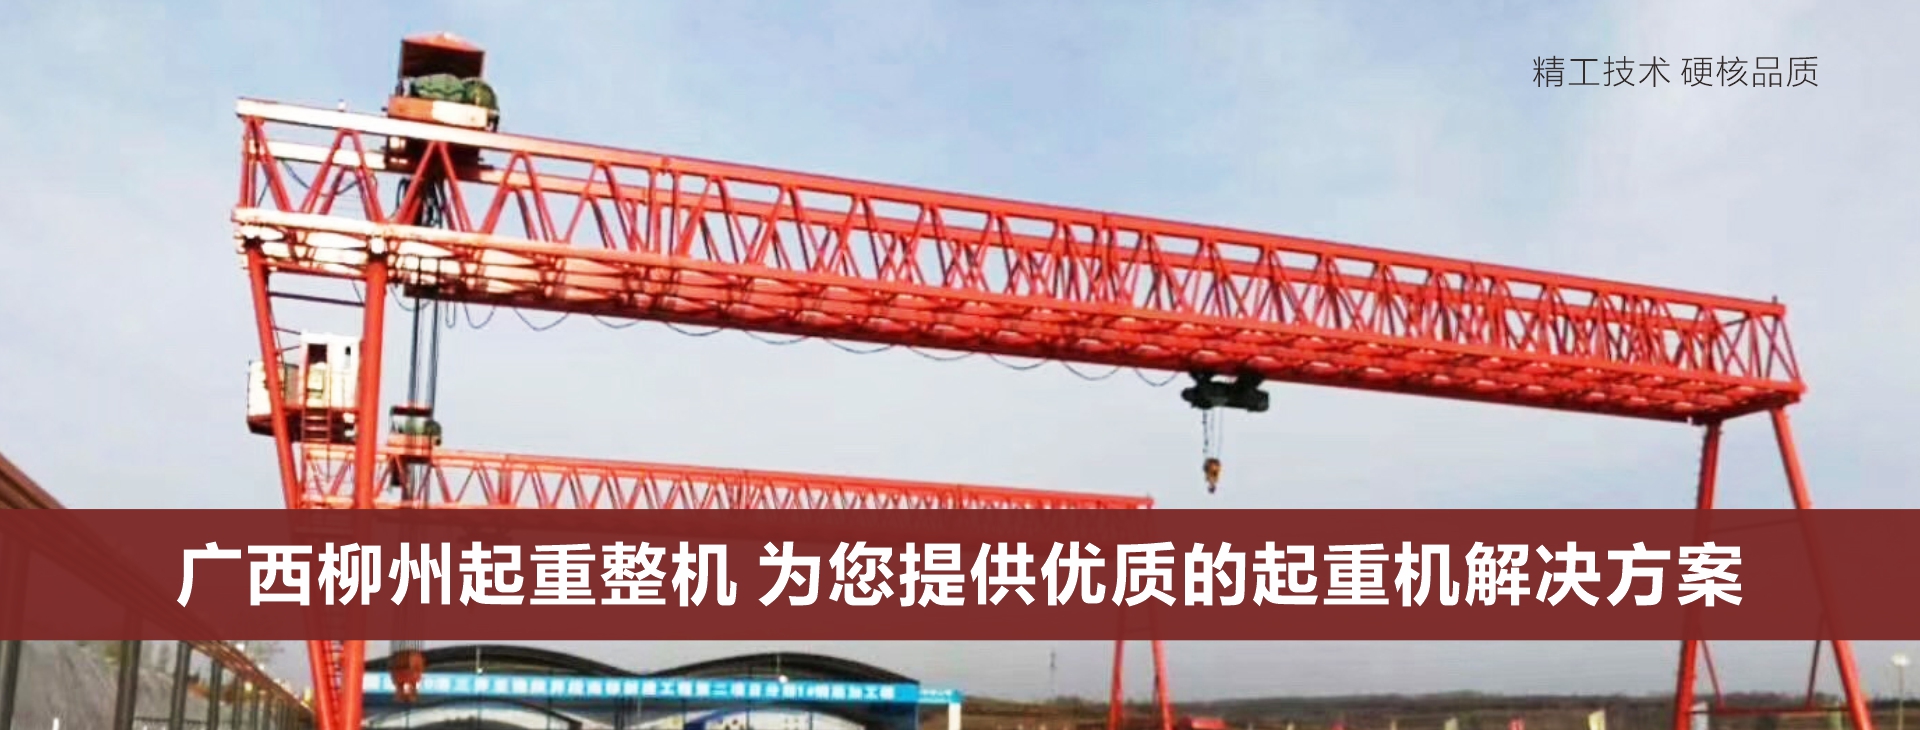 广西柳州起重设备-专业批发生产